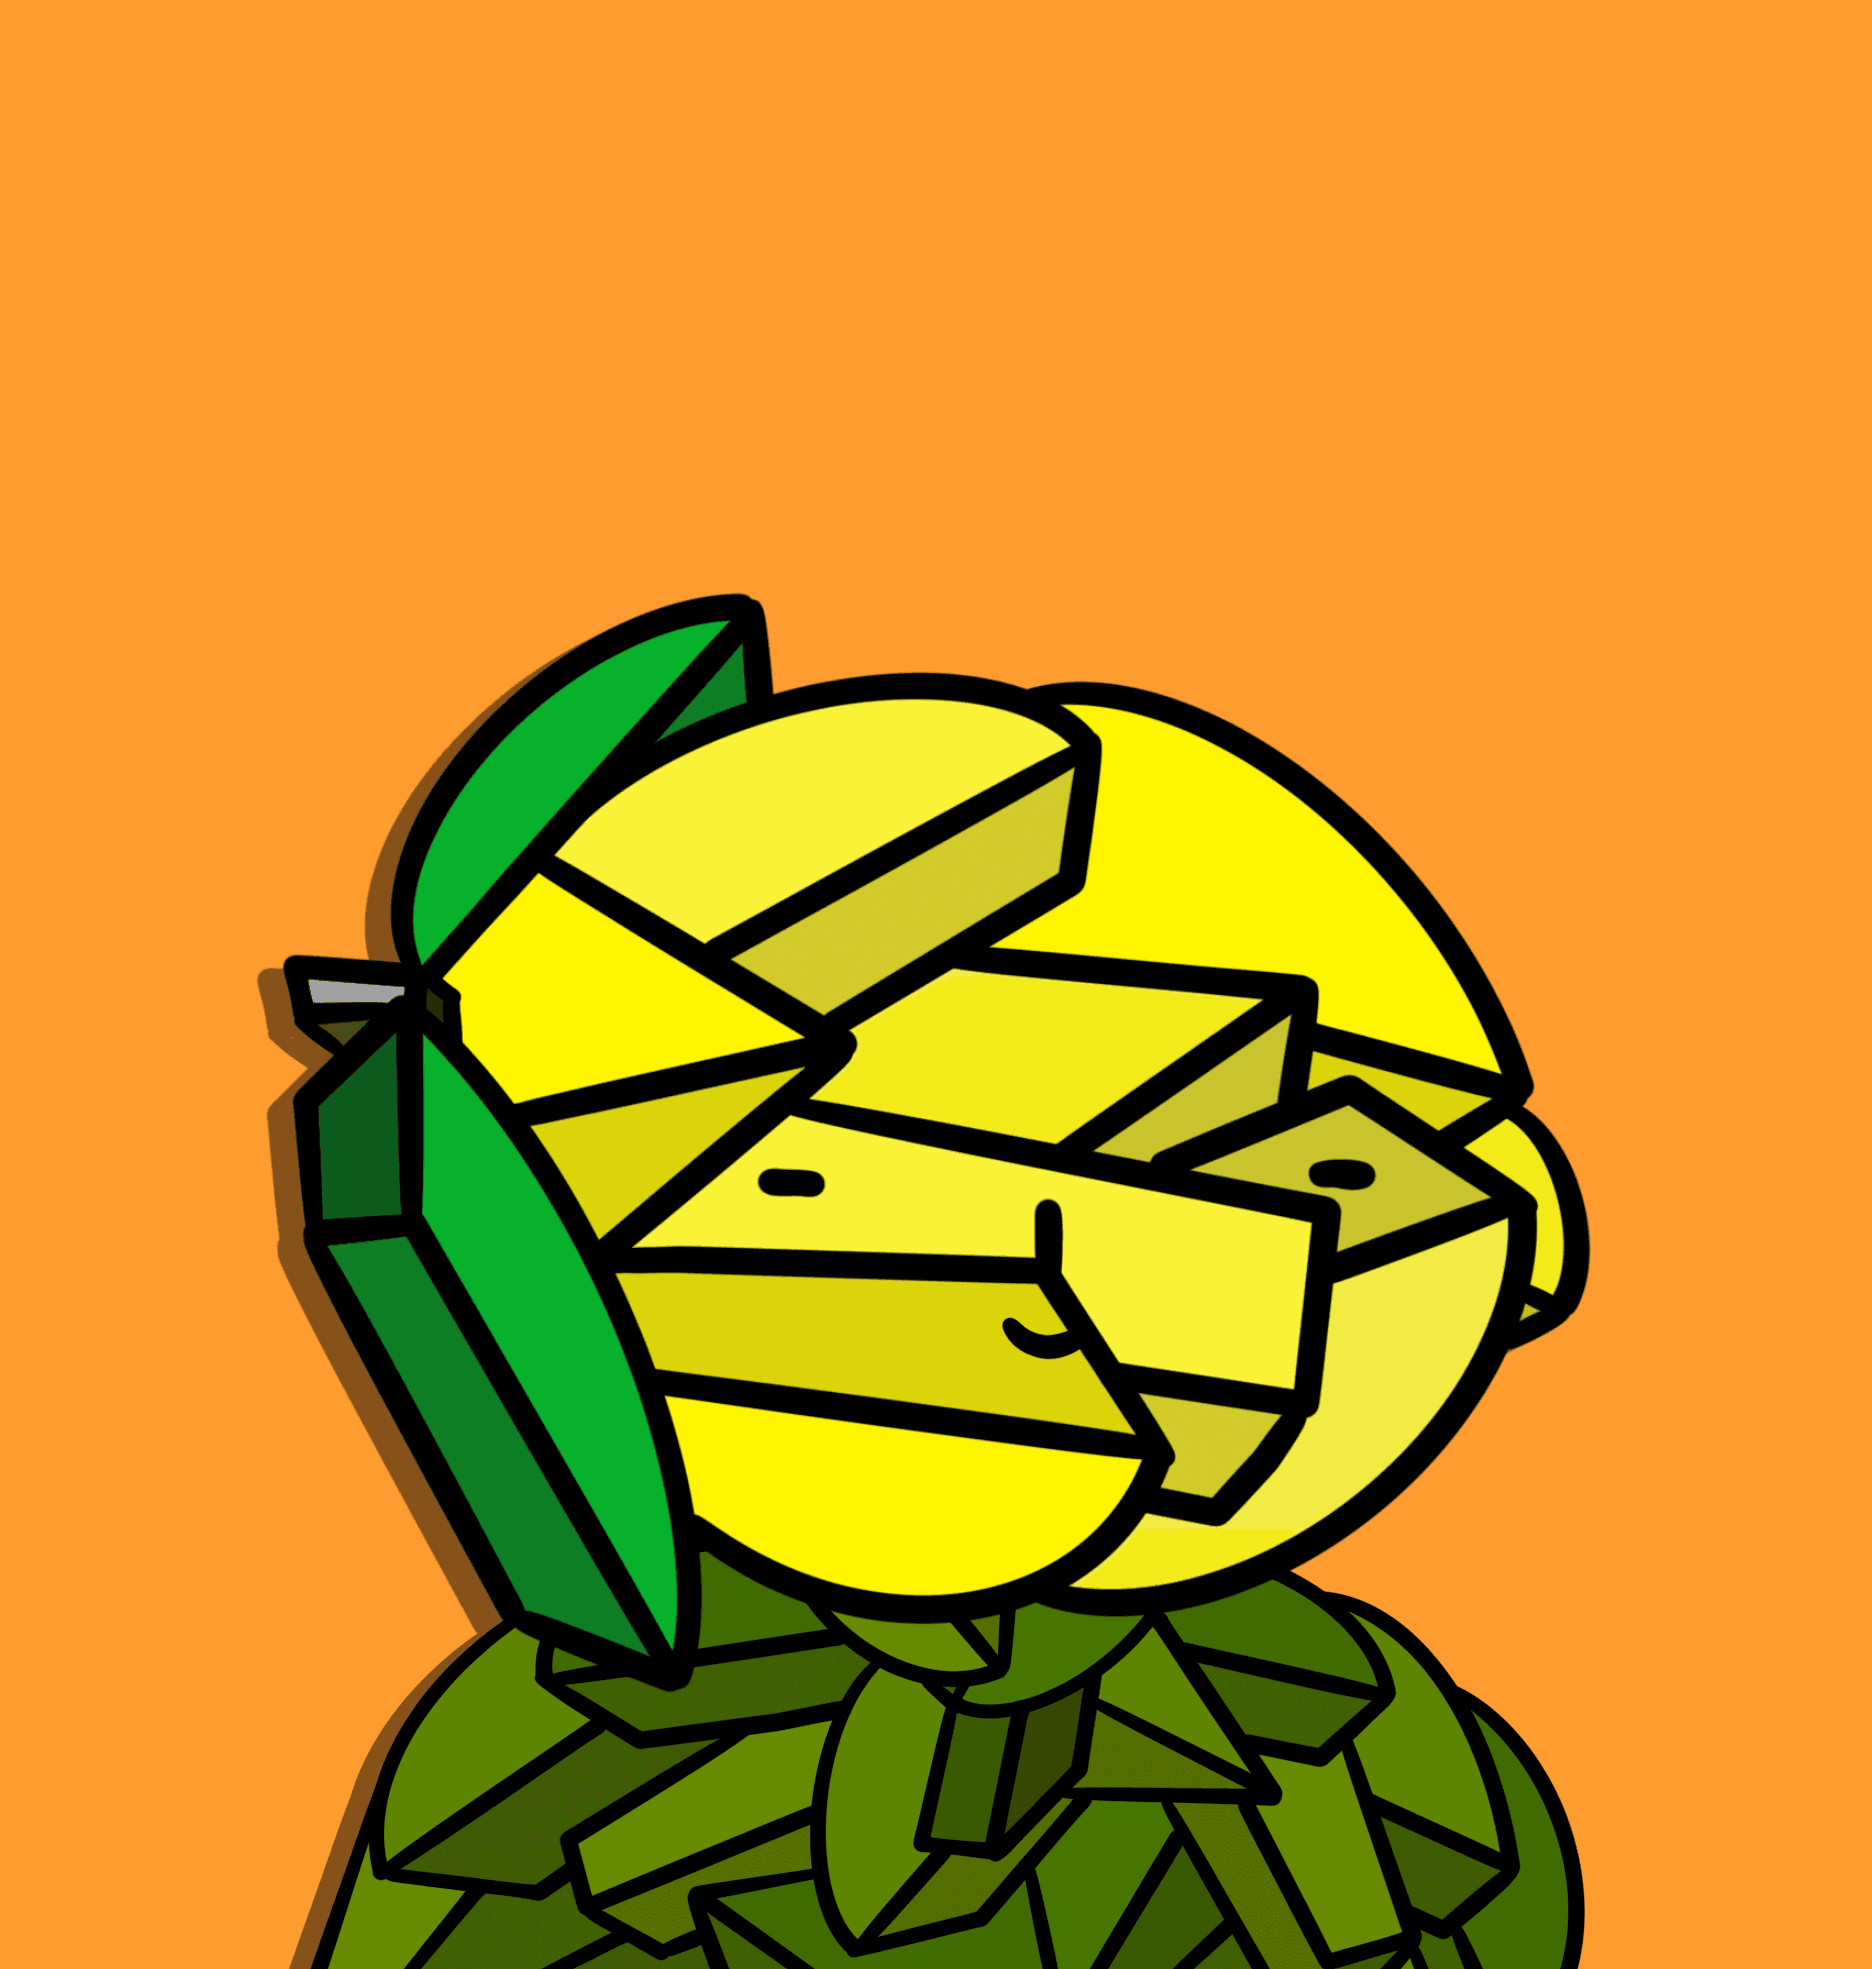 A Wee Lemon